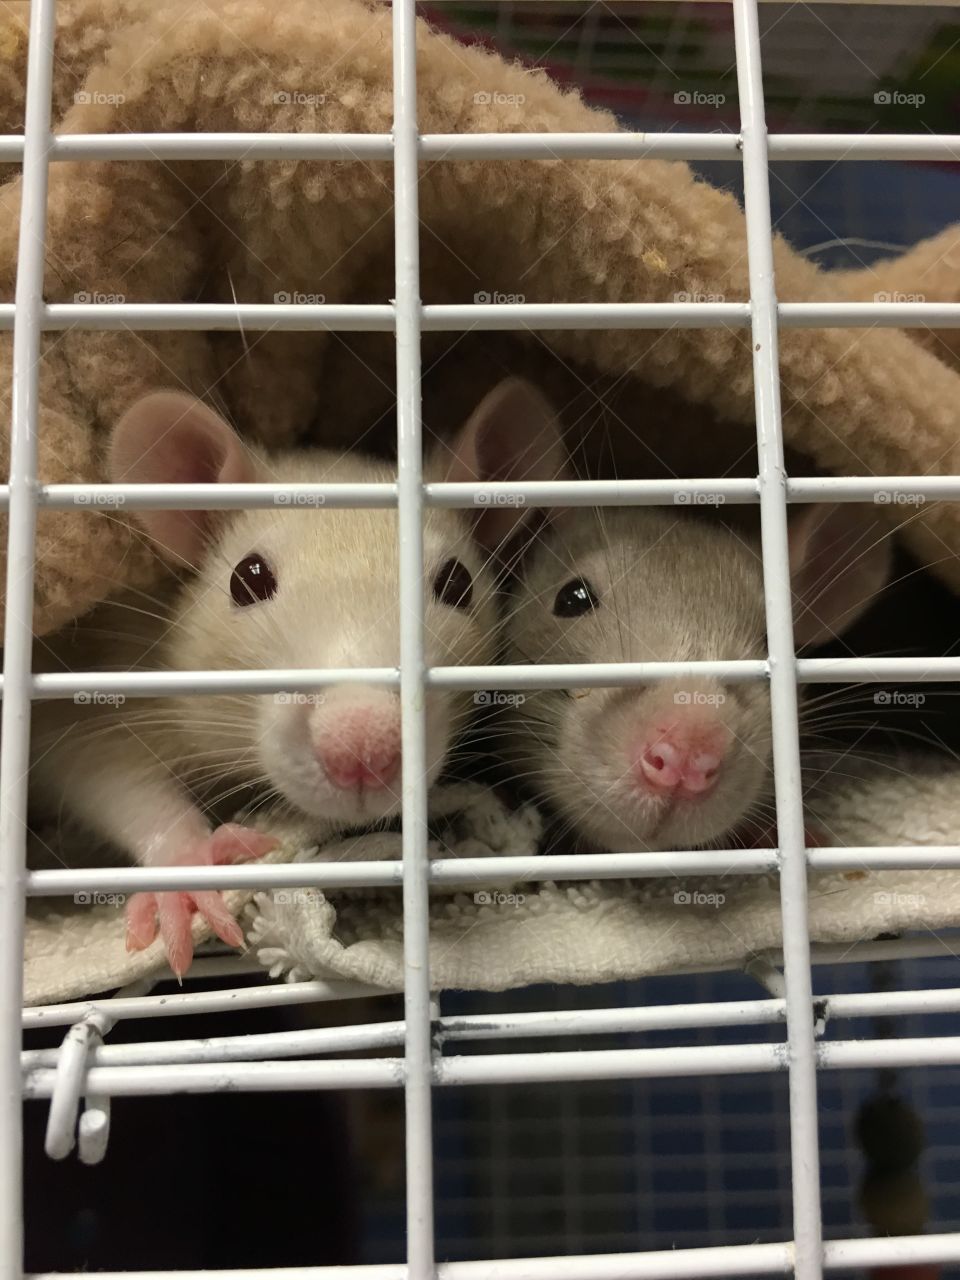 Cute rats